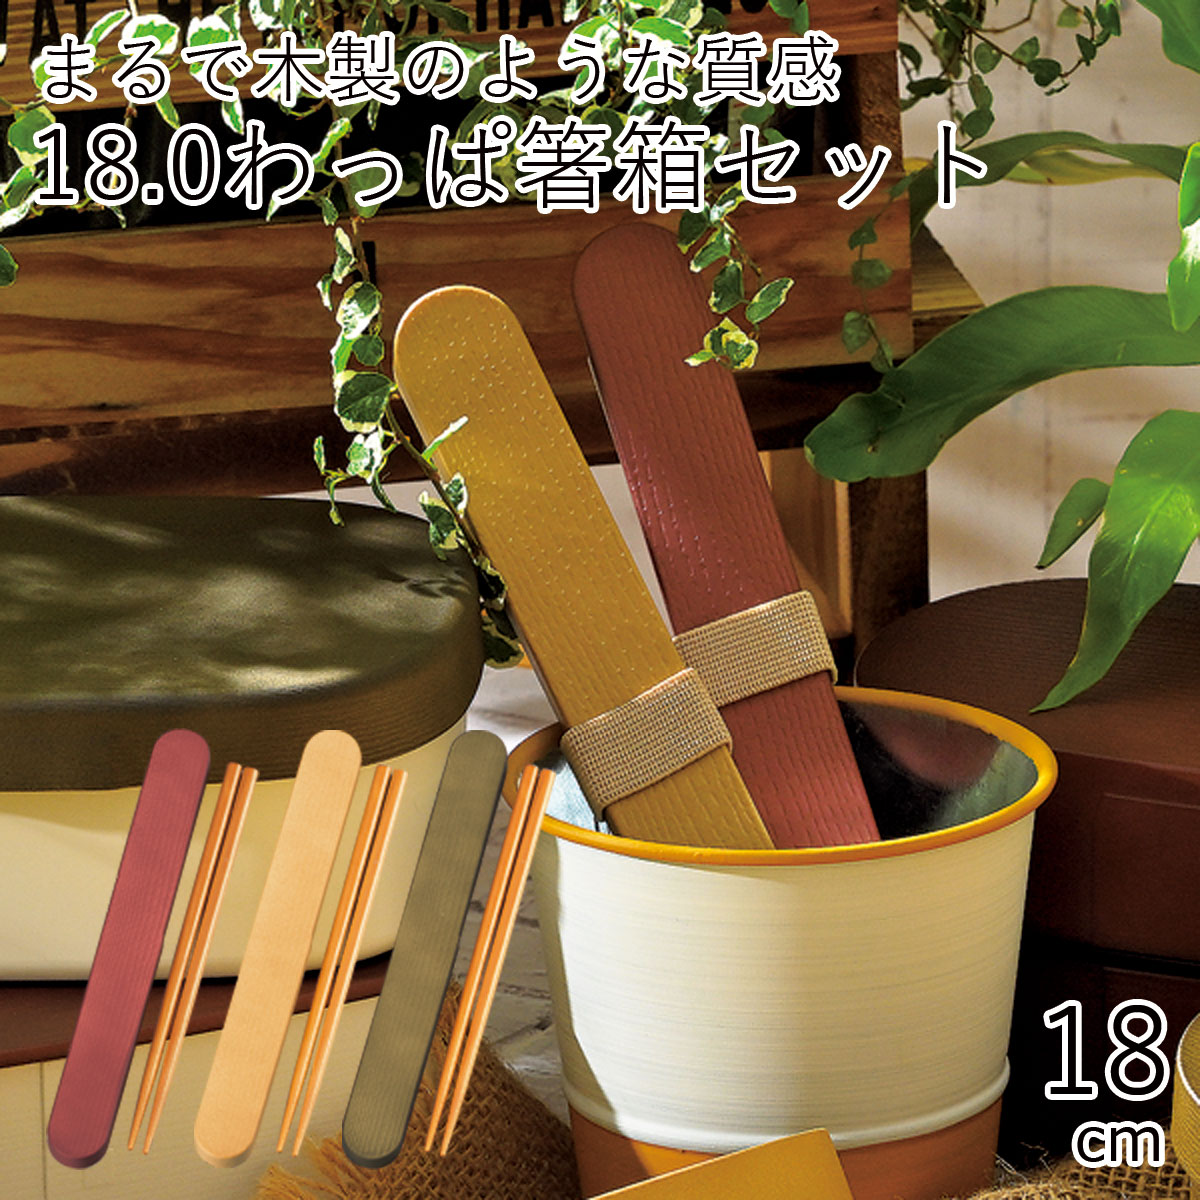 箸 ケース”HAKOYA 18.0わっぱ箸箱セット”Garden ガーデン日本製 お弁当グッズ お弁当箱 おしゃれ 箸 シンプル アースカラー LACQUER WARE